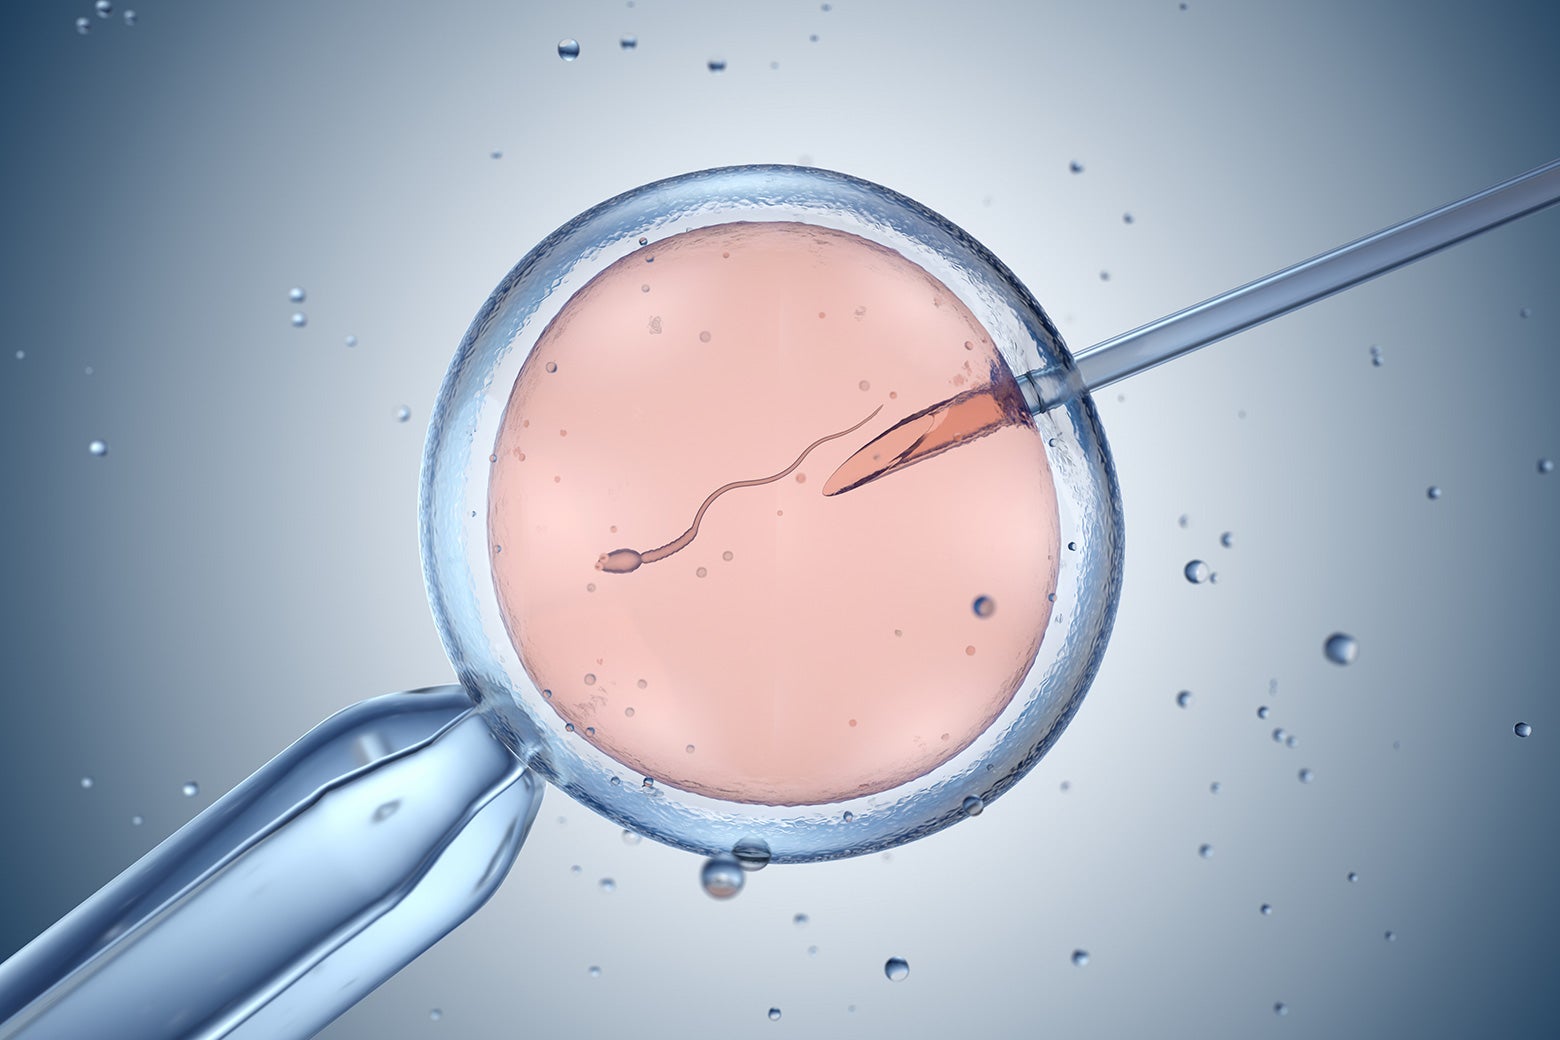 A microscopic view of a sperm entering an egg via a needle.